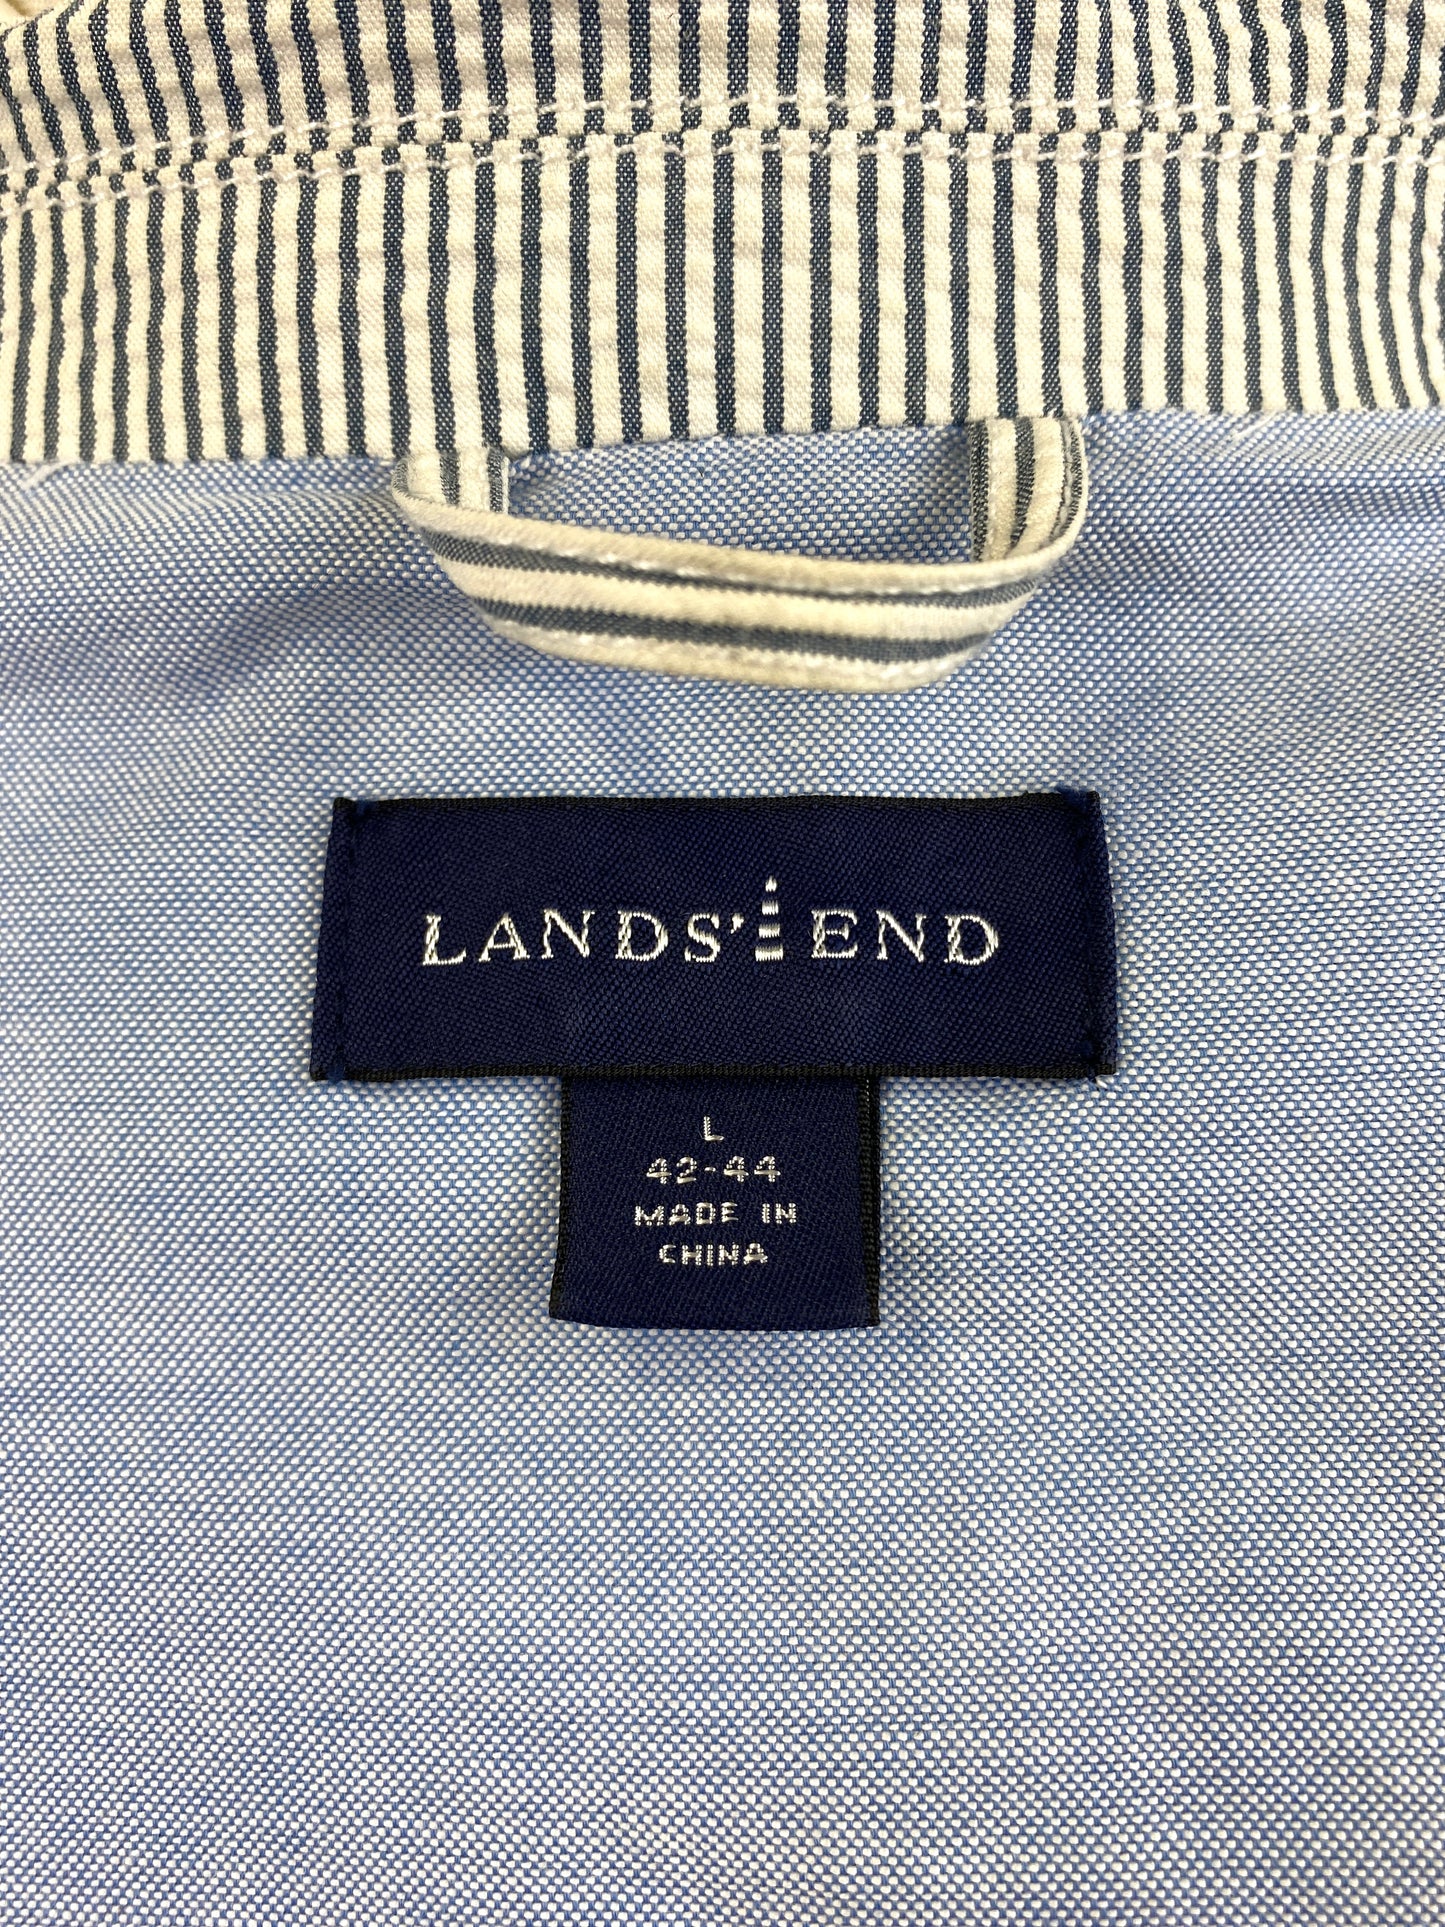 Contemporary Men's Blue/ White Stripe Seersucker Blazer, Land's End Jacket, C44R